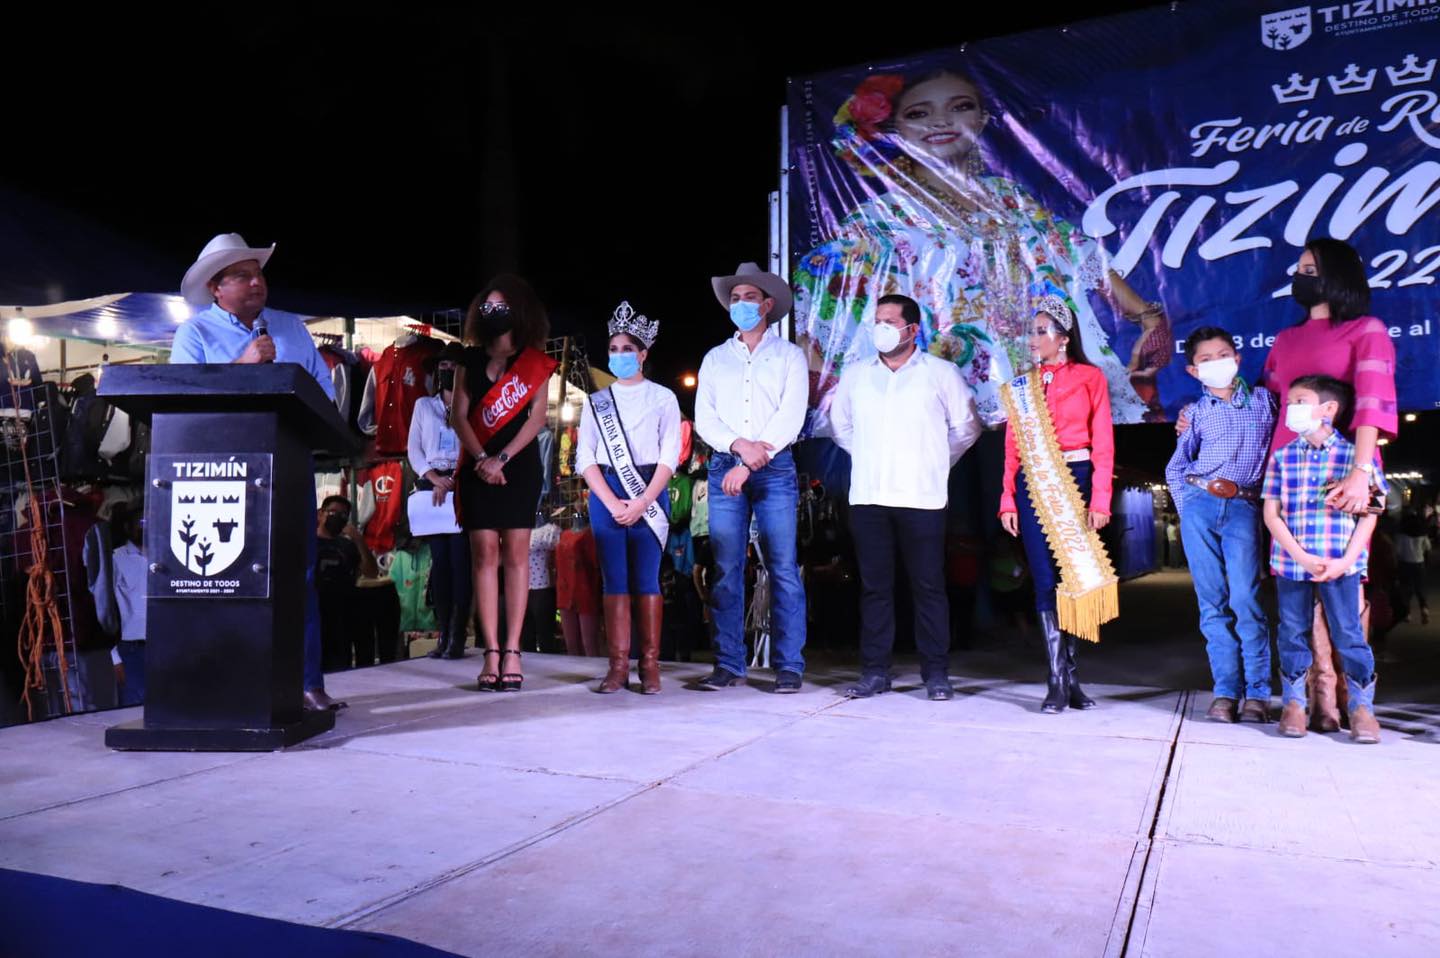 Feria de Reyes inauguración Tizimín